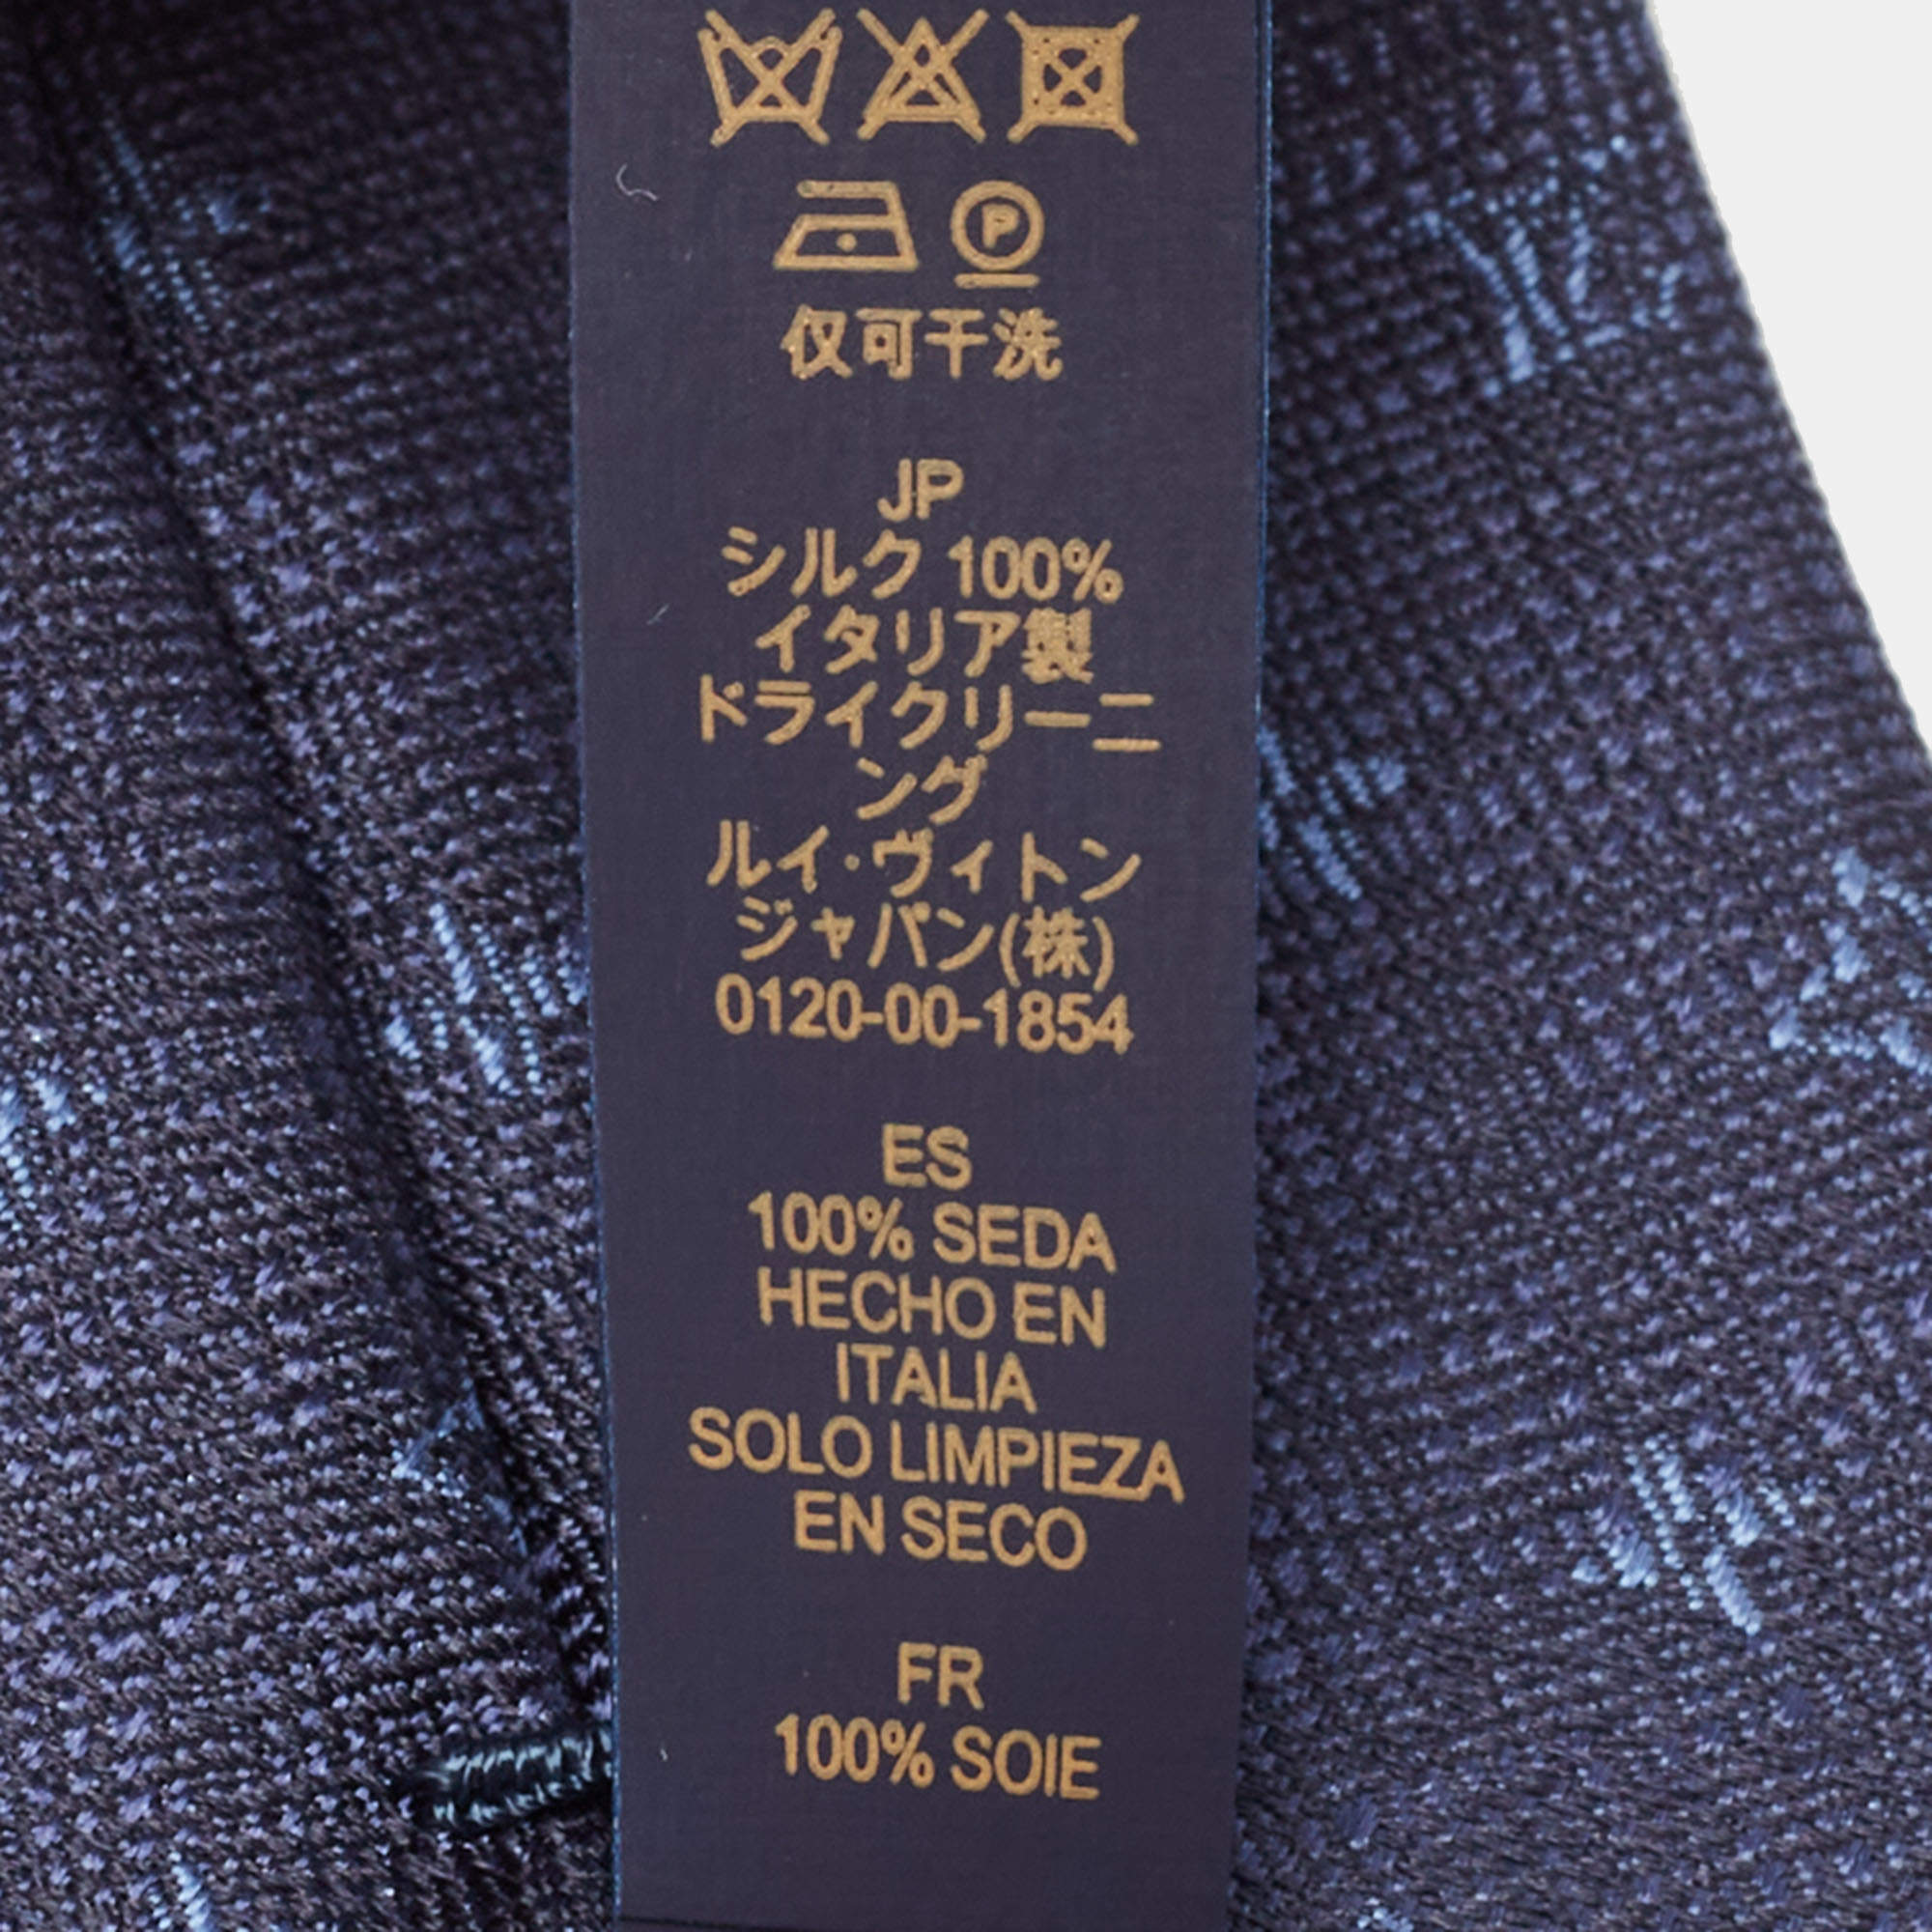 Louis Vuitton Constellation Denim Tie Navy Blue Silk